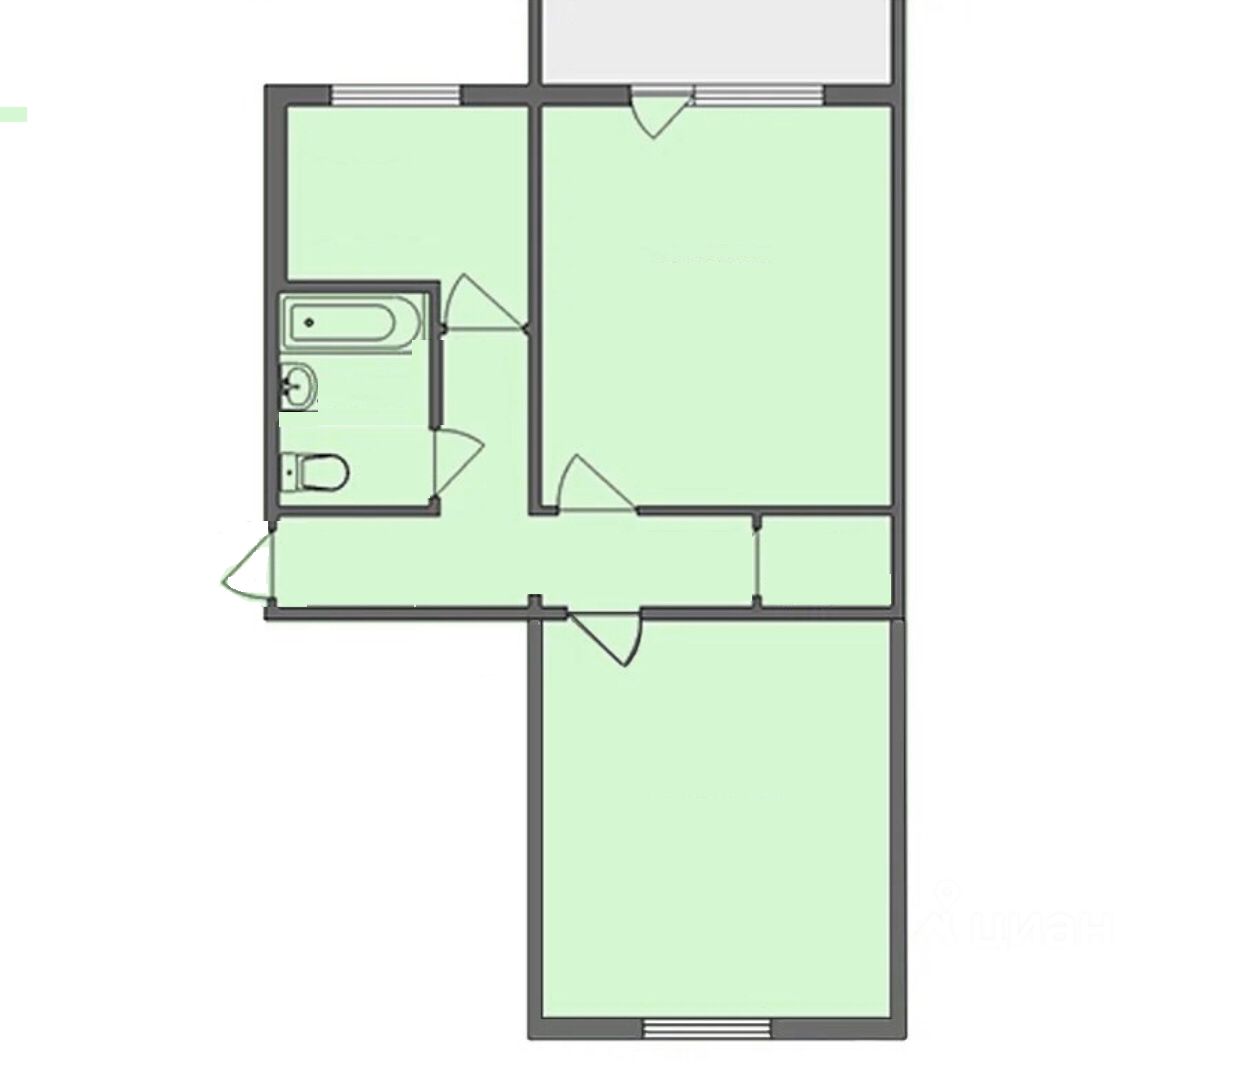 Брежневка 2 комнатная планировка изолированные комнаты